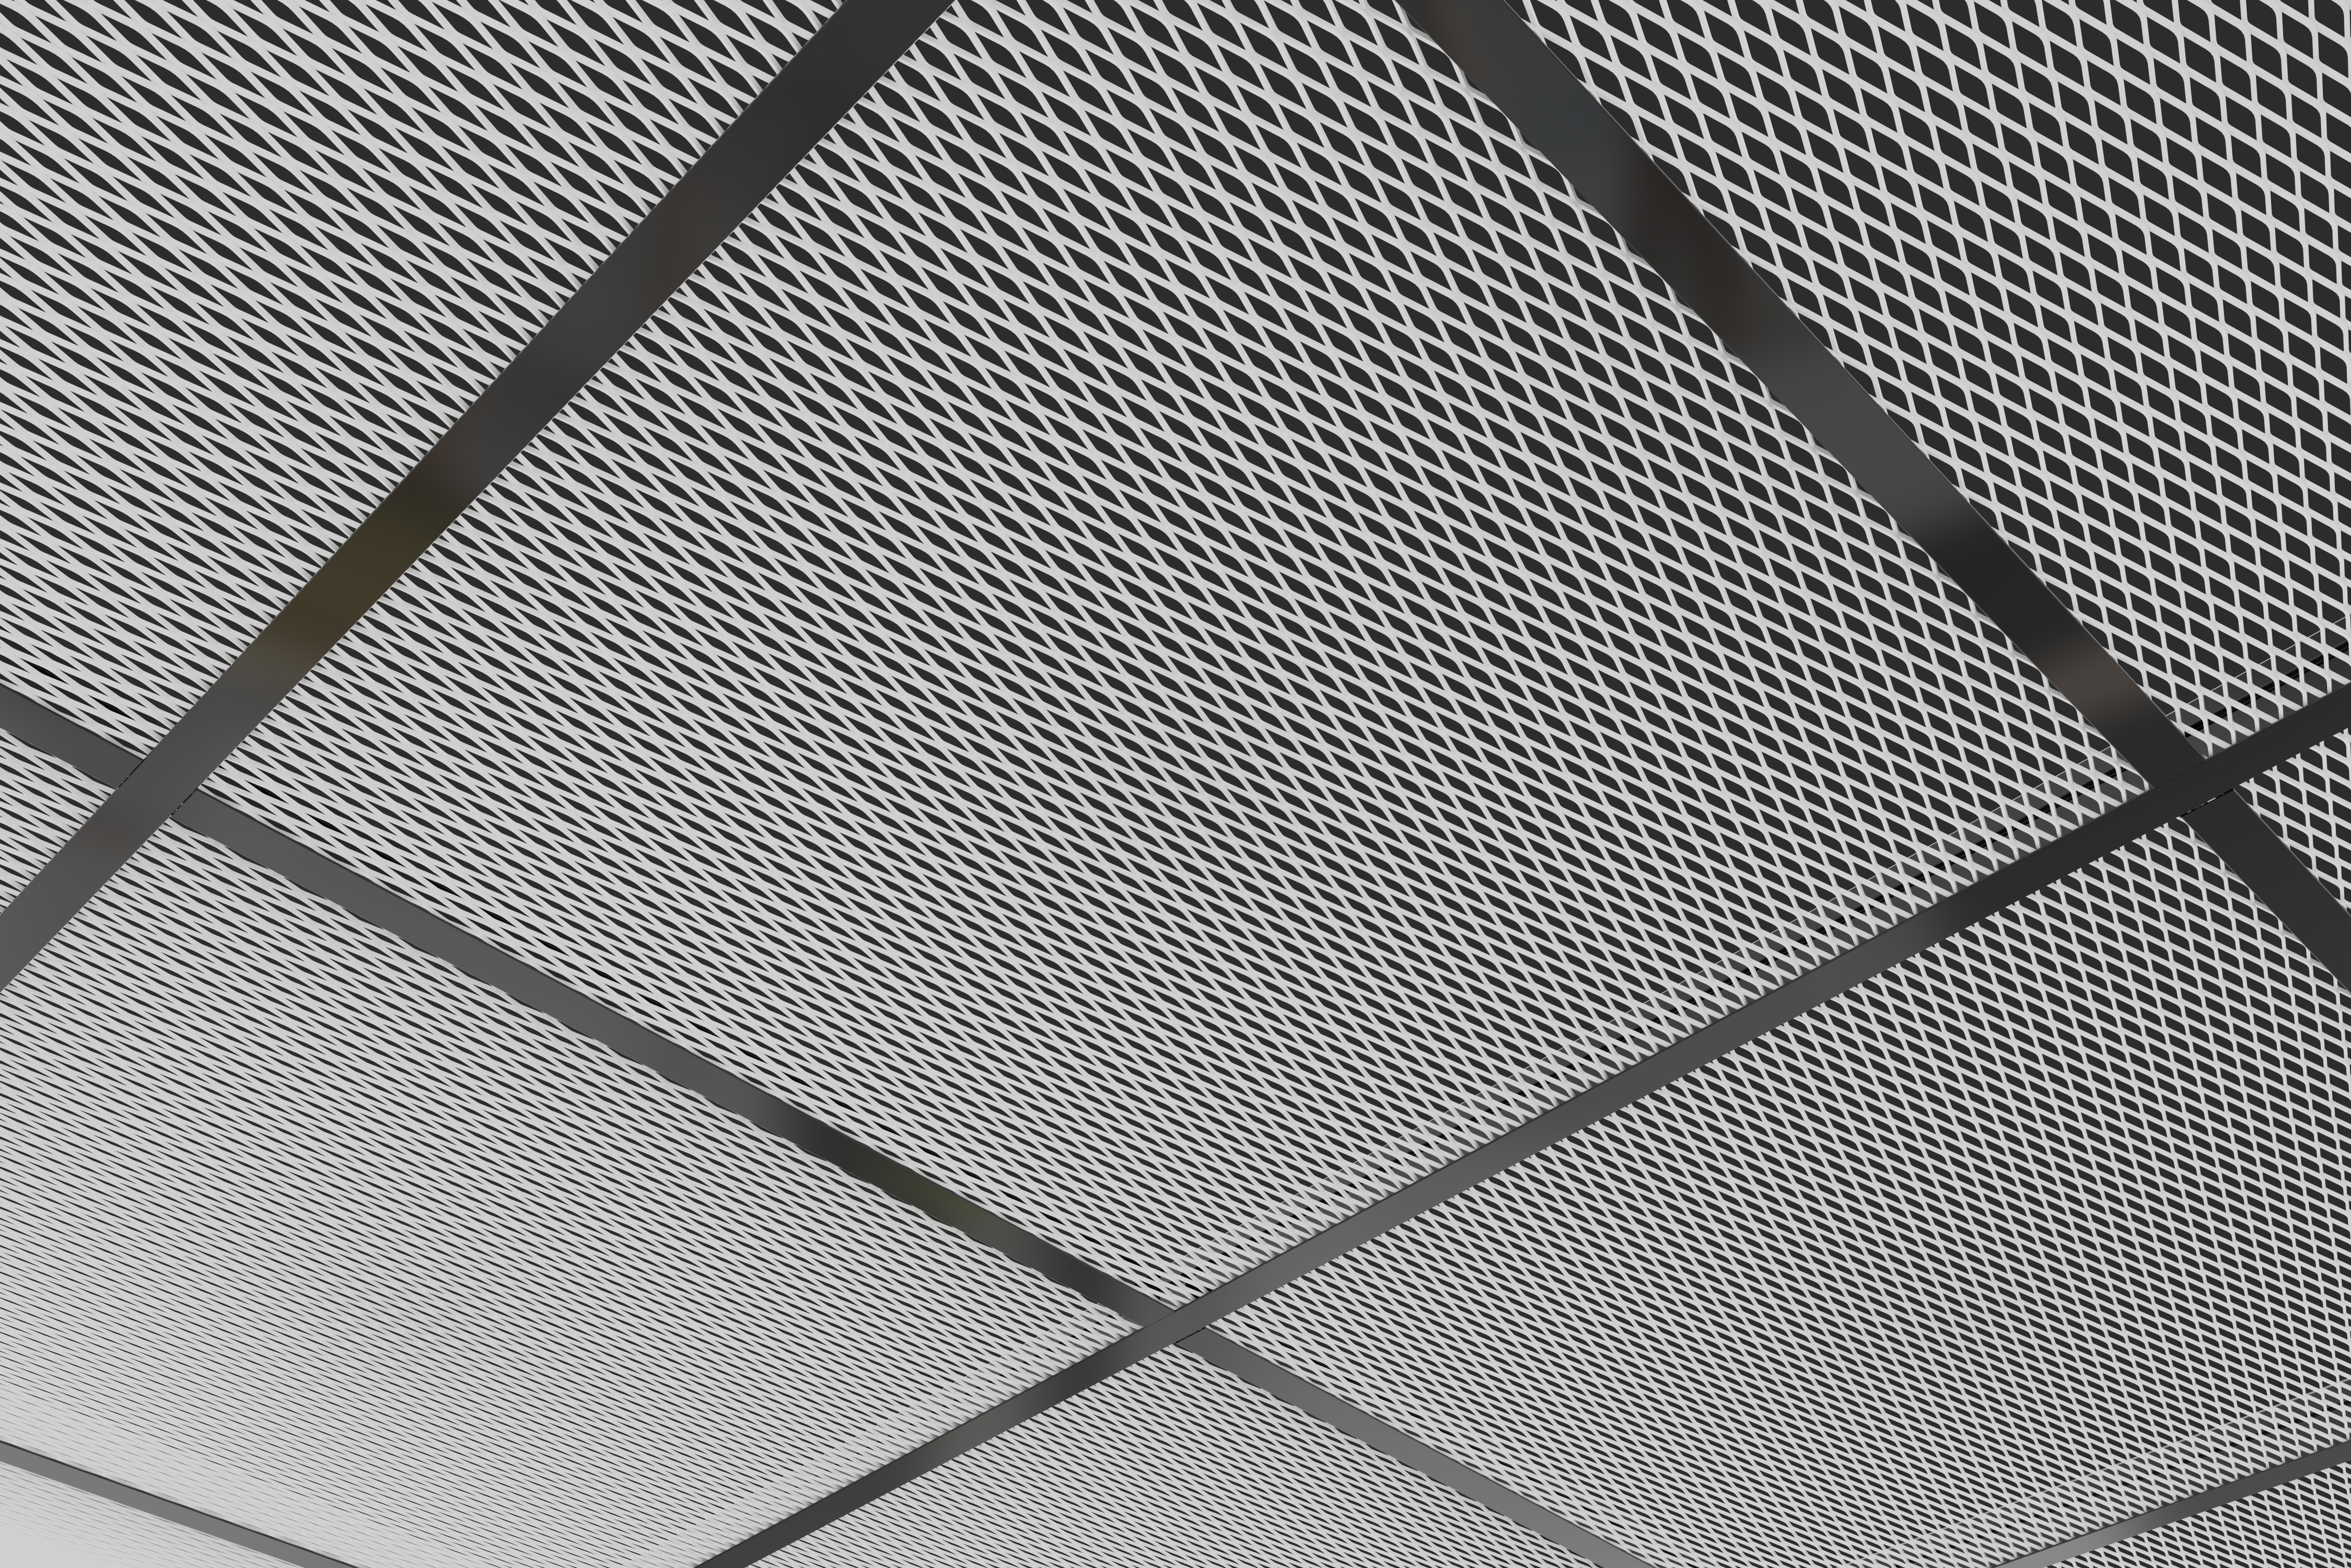 Metal mesh ceilings range expanded by Zentia